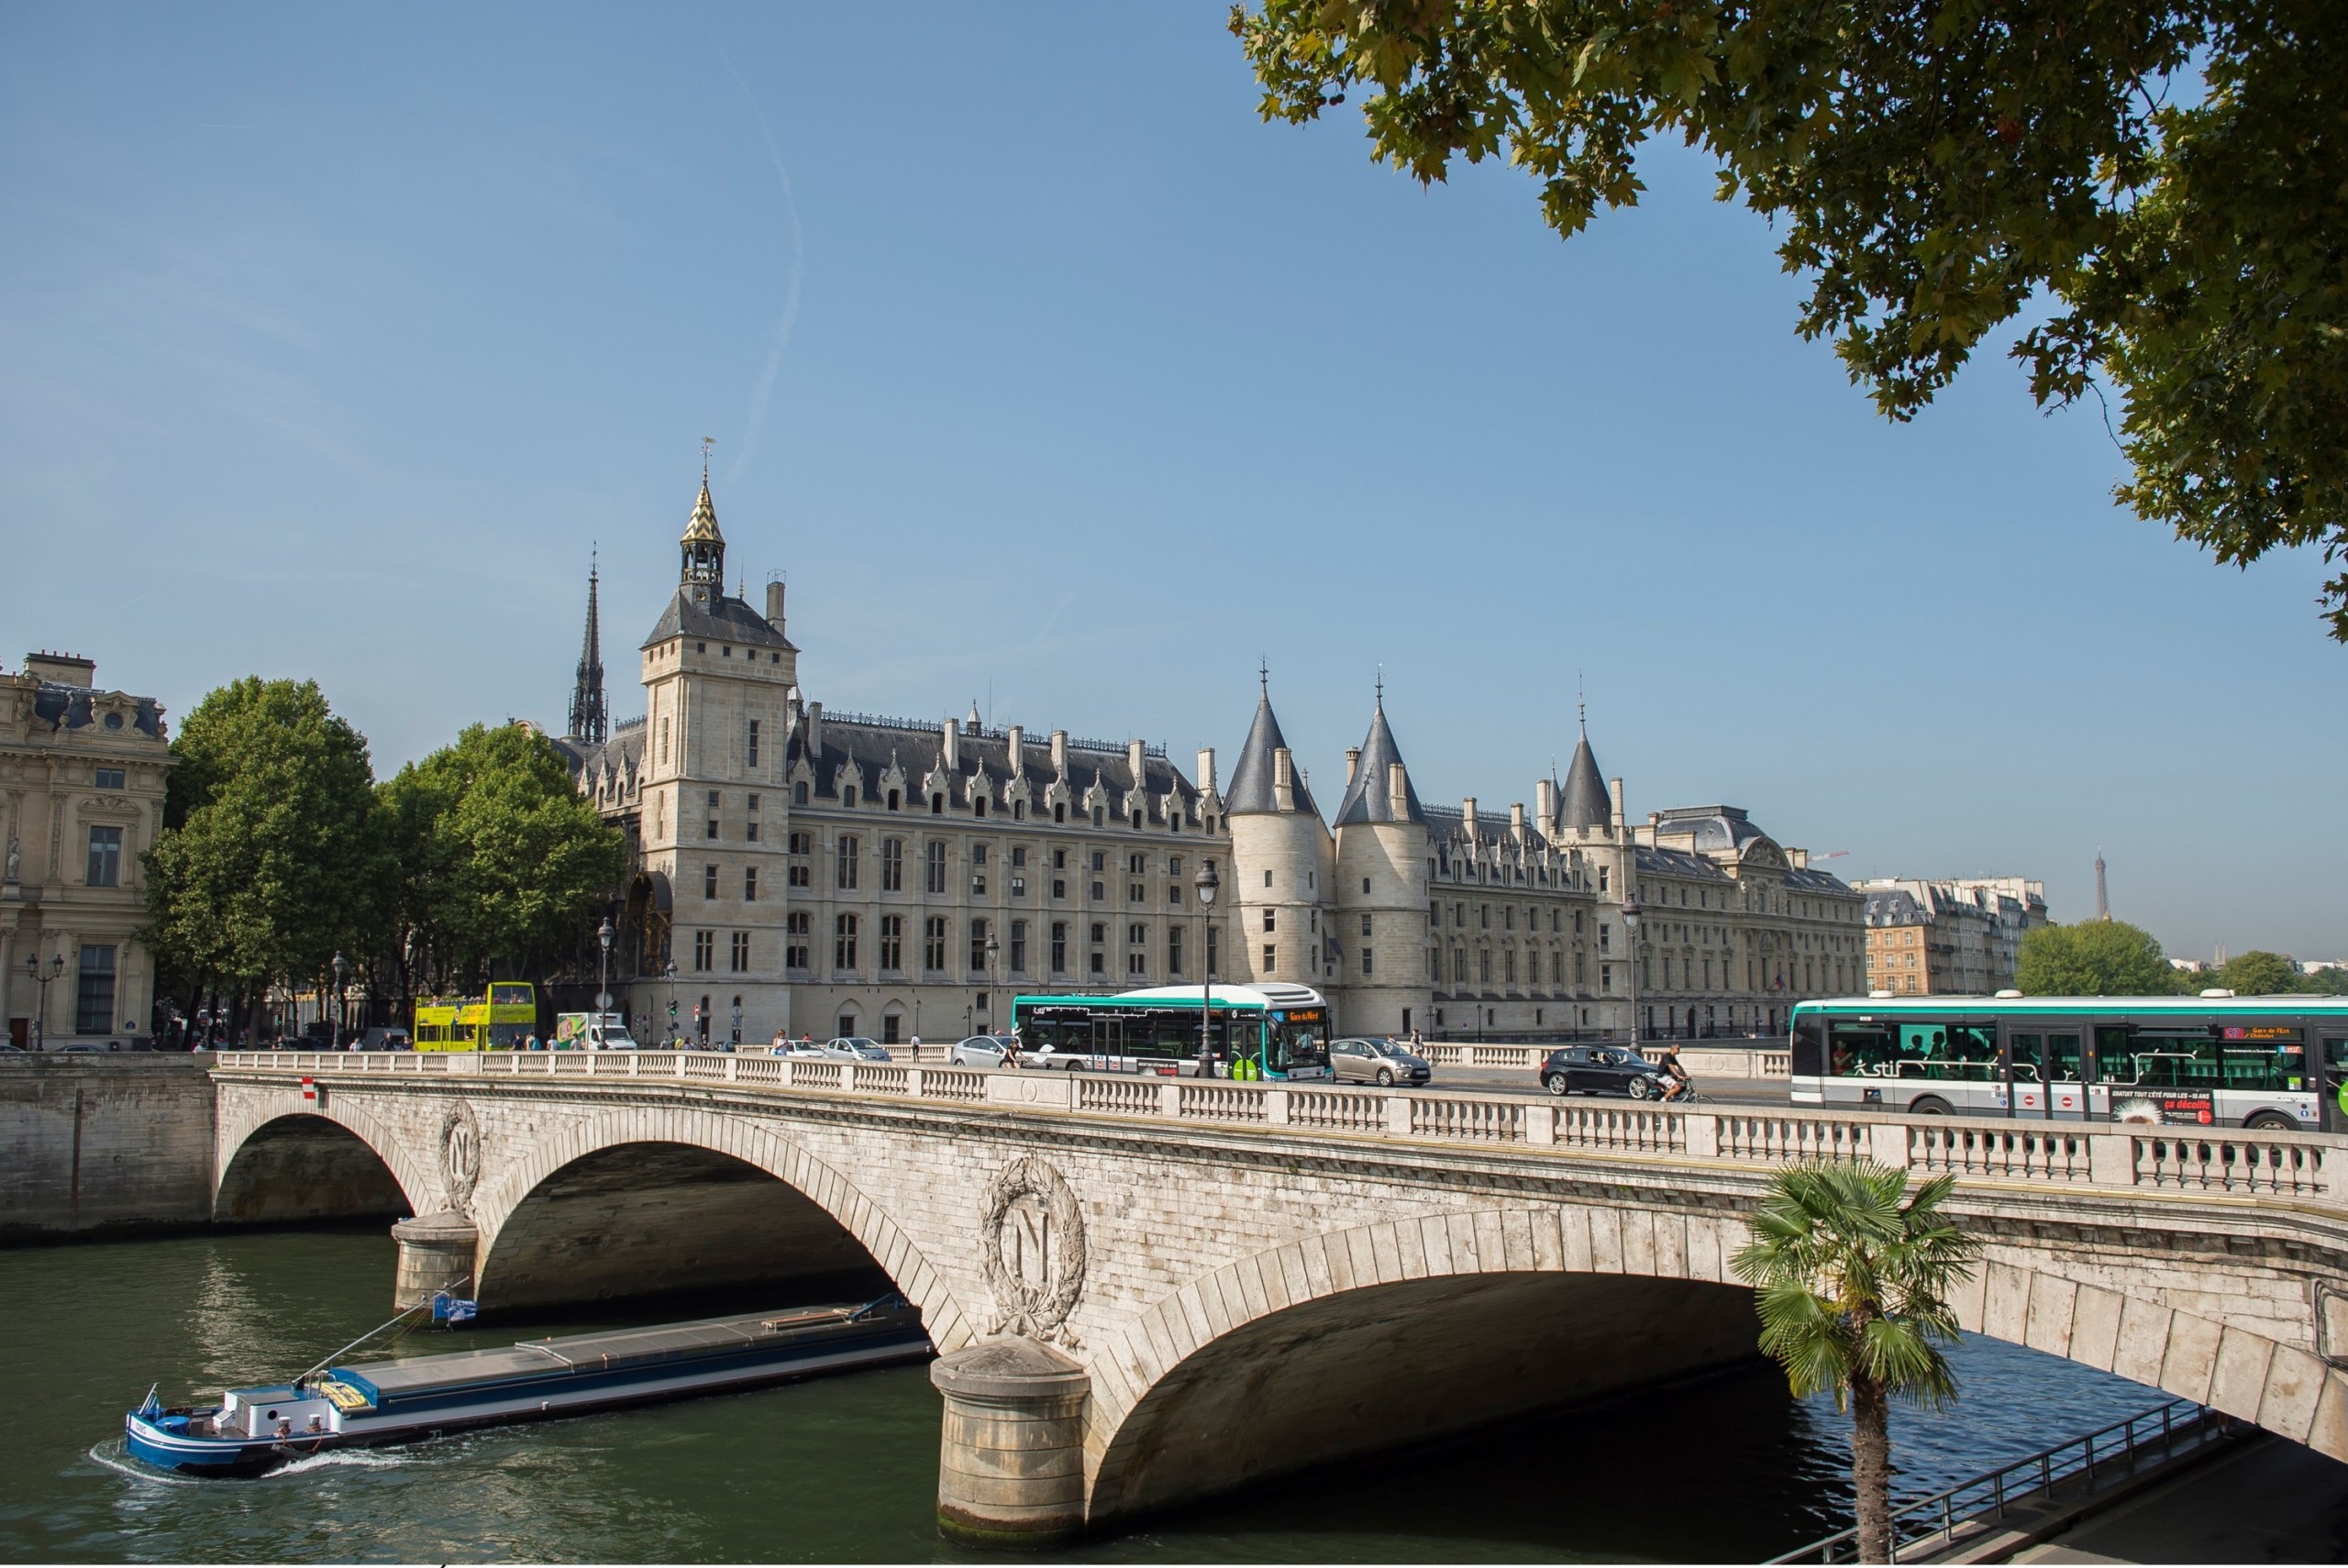 Visuel À Londres, TFL* gère des navettes fluviales. Pourquoi la RATP ne le fait-elle pas à Paris ?